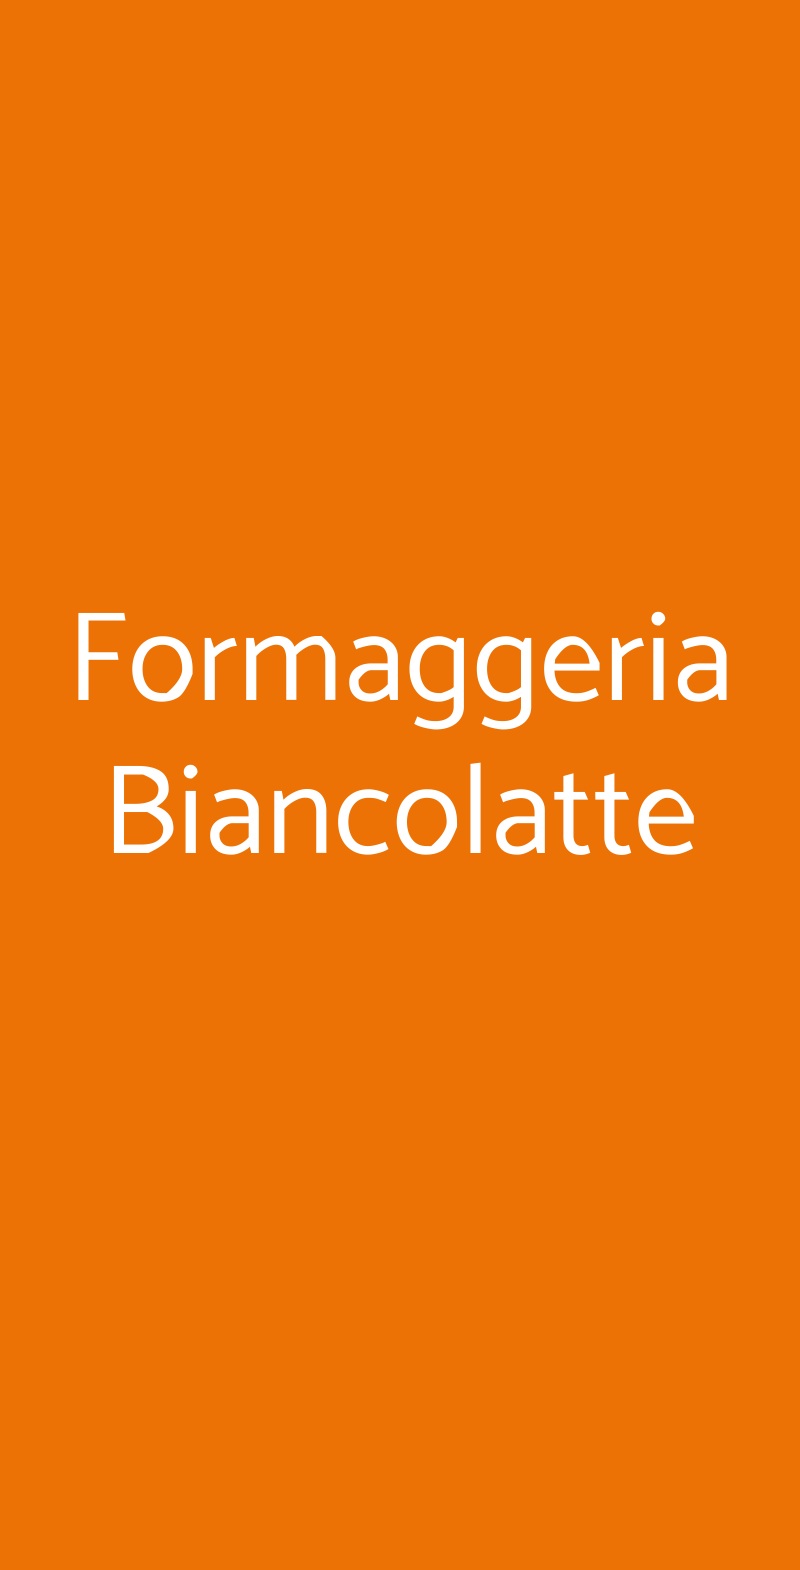 Formaggeria Biancolatte Arezzo menù 1 pagina